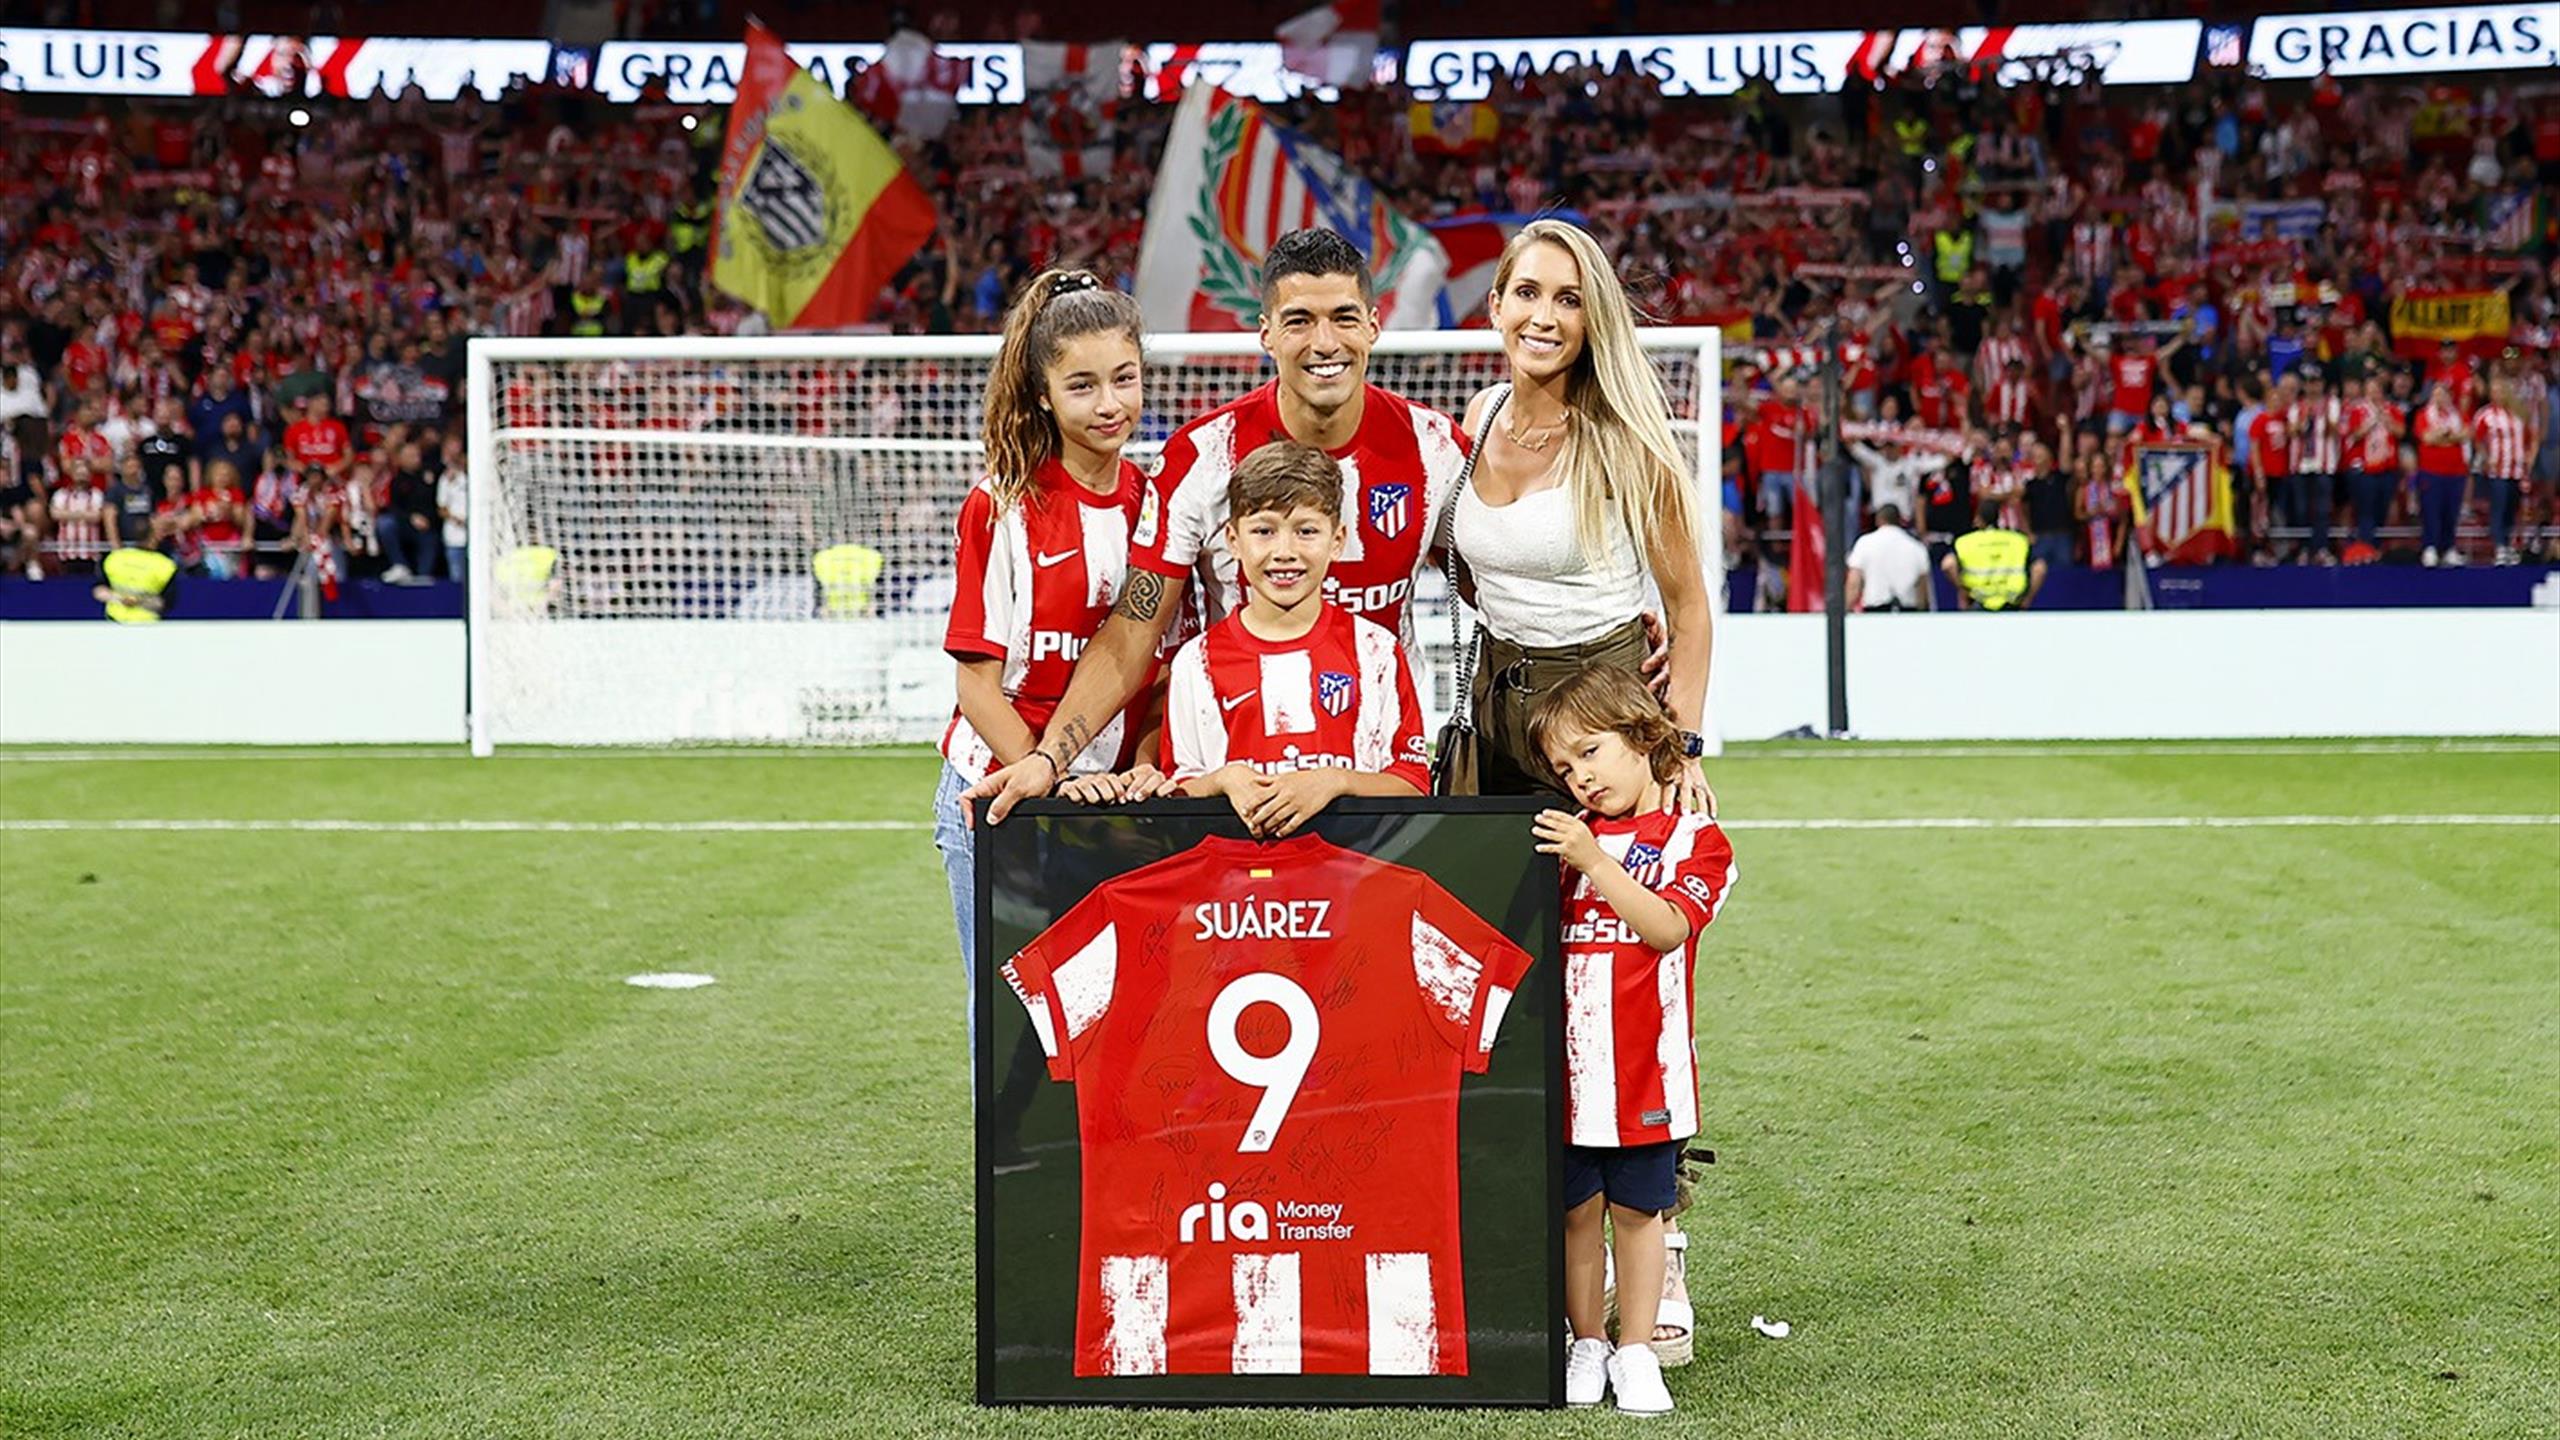 Luis Suarez fait des adieux émouvants aux fans